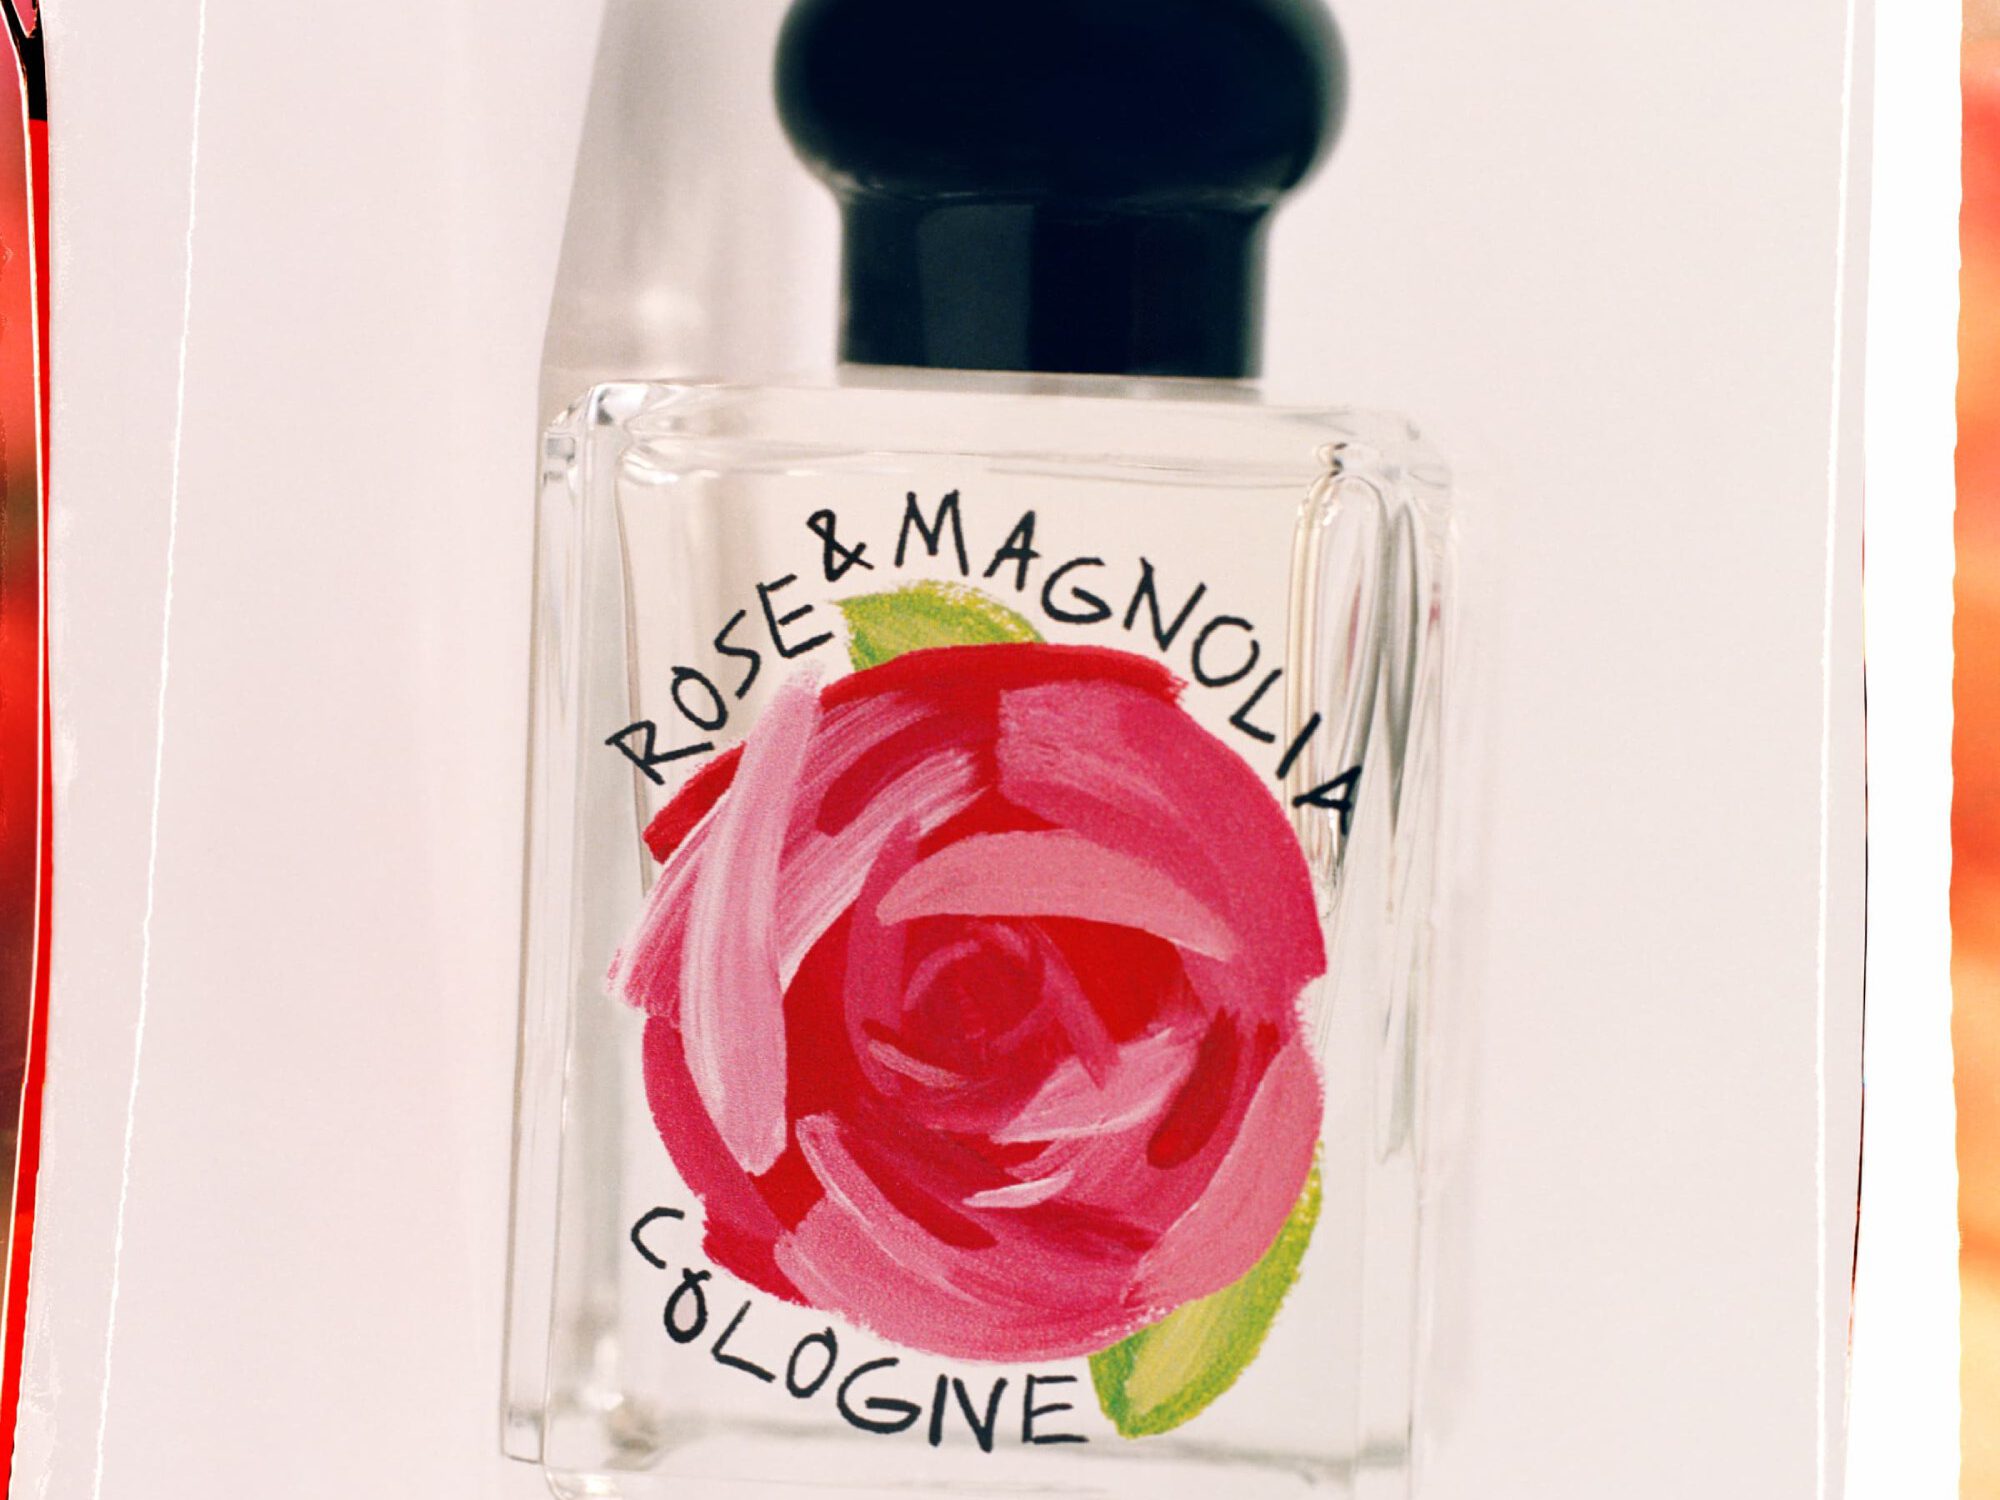 Jo Malone London Rose & Magnolia Cologne 